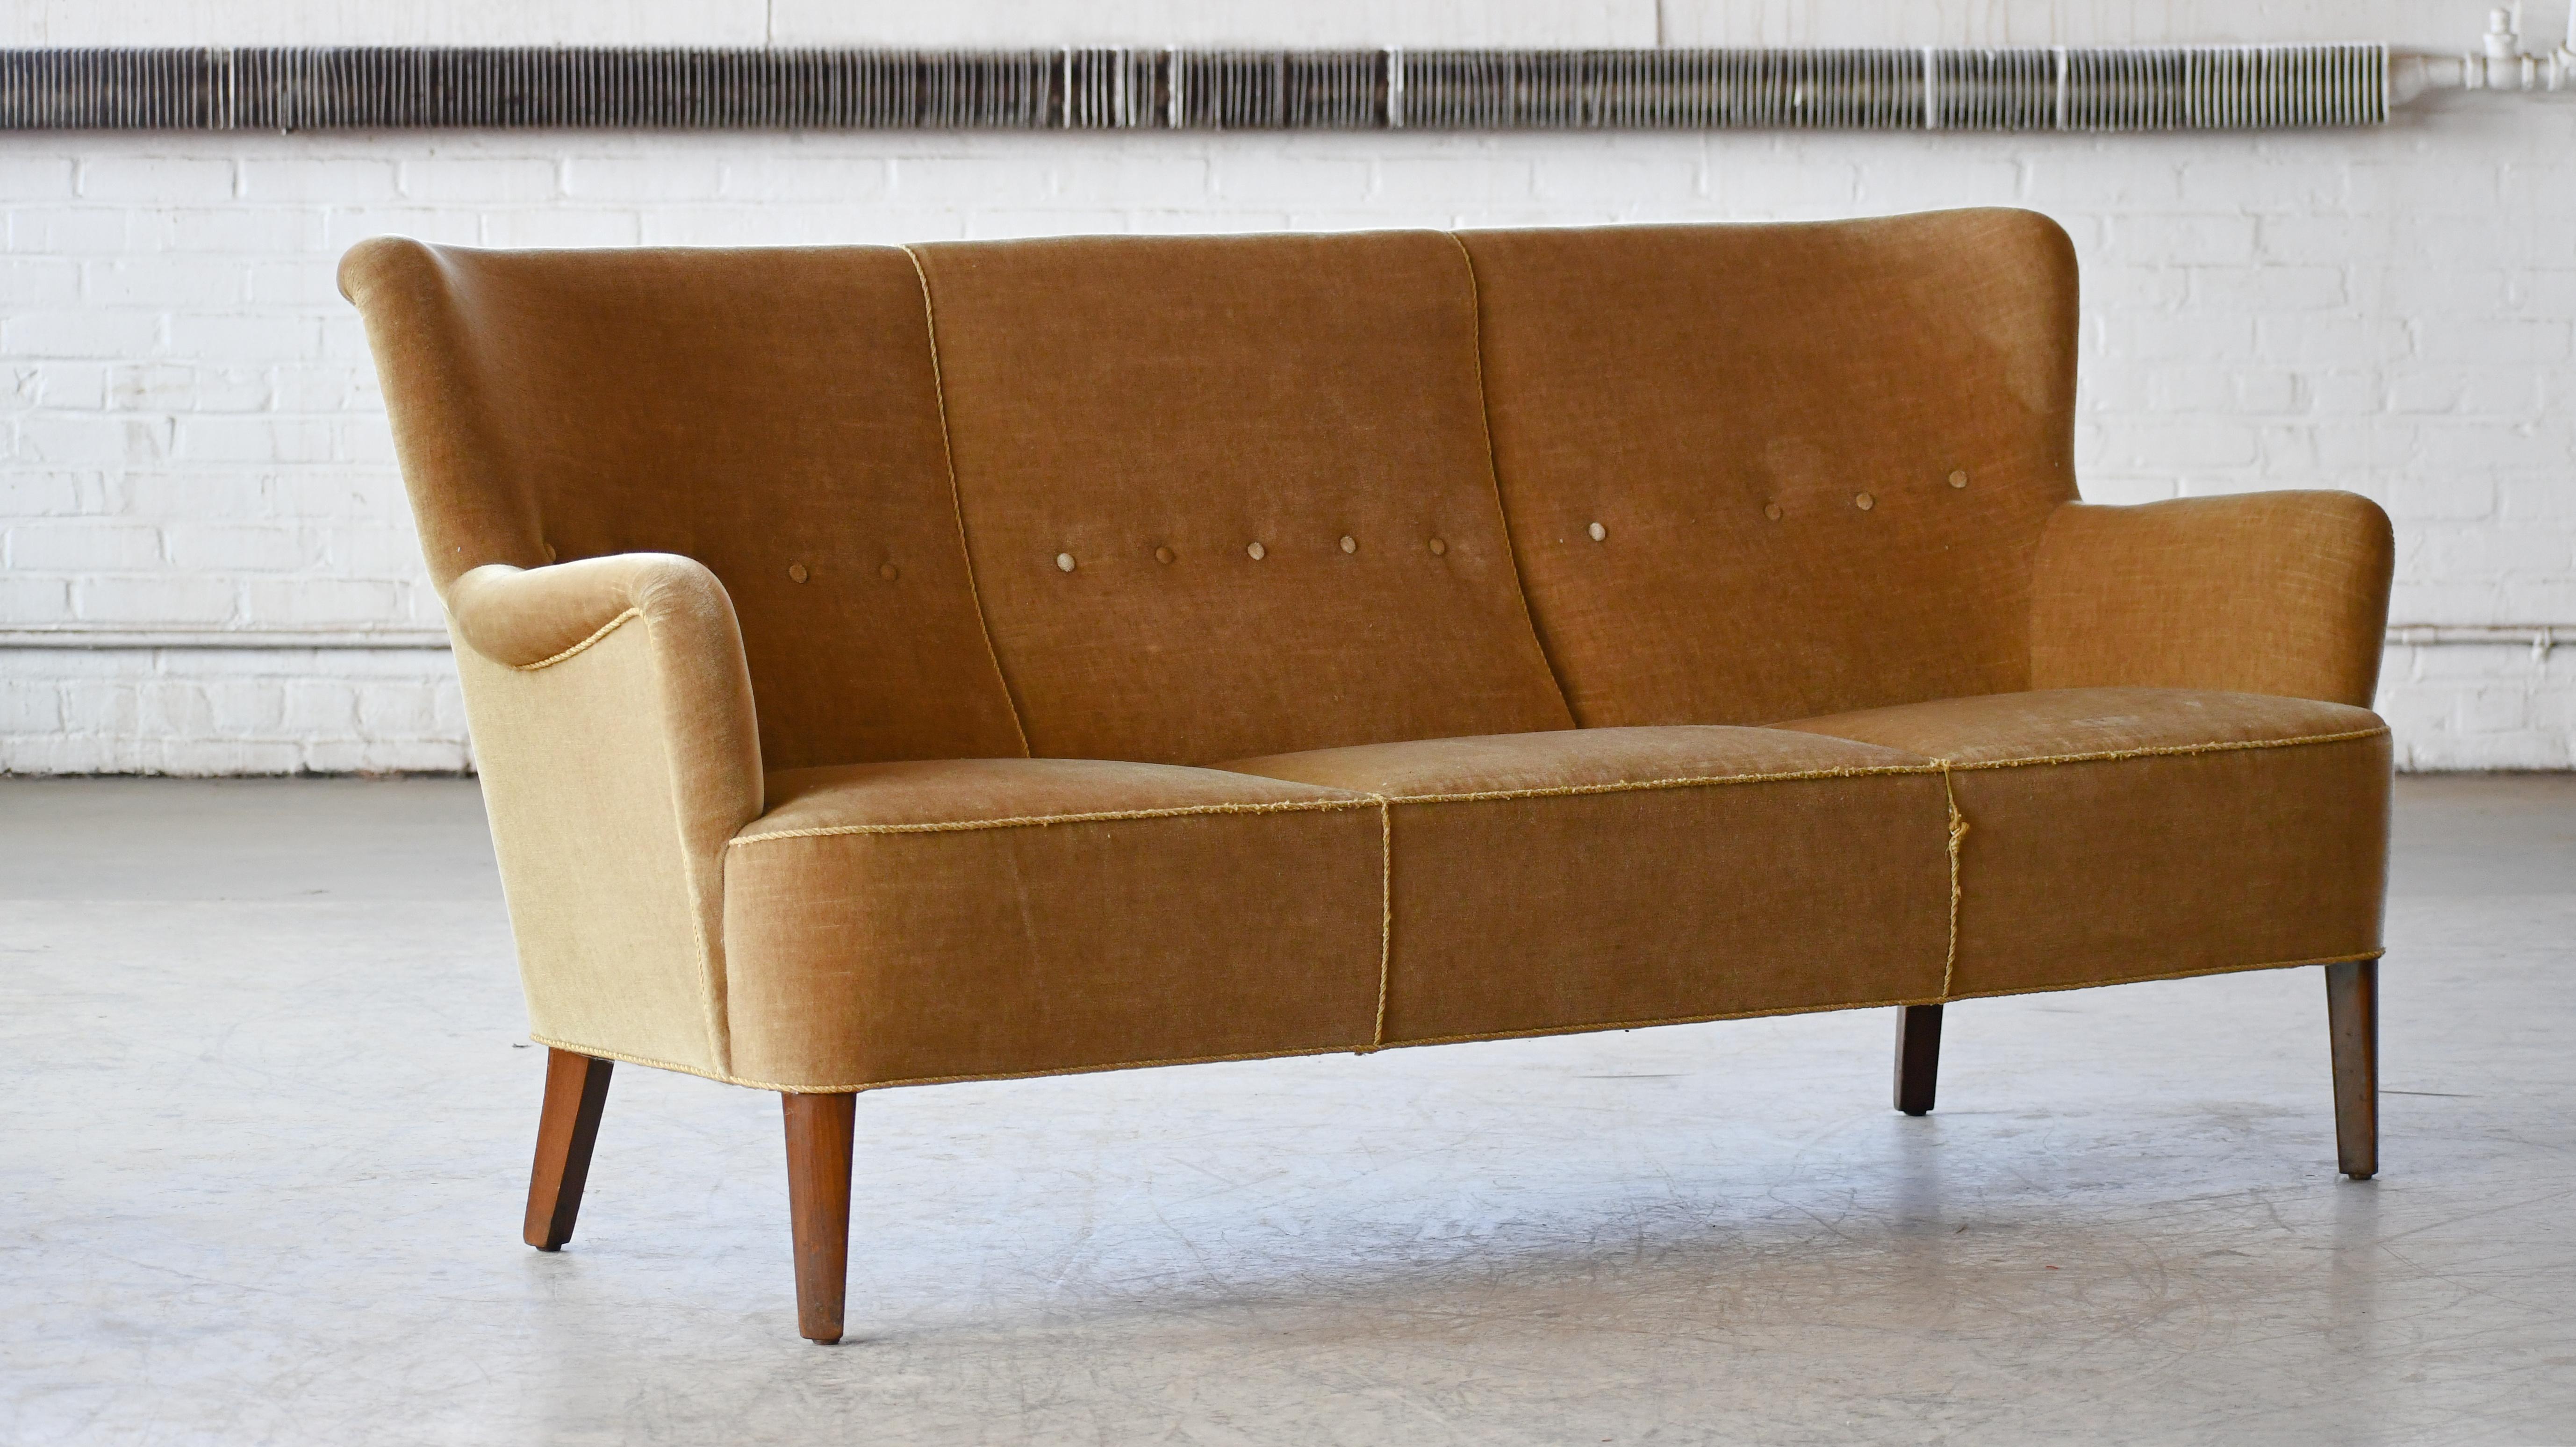 Les travaux importants d'Orla Mølgaard-Nielsen ont été principalement réalisés avec son partenaire, Peter Hvidt, mais les premiers modèles du designer - comme ce canapé - sont largement réputés pour leur élégance discrète et leur qualité. Ce rare